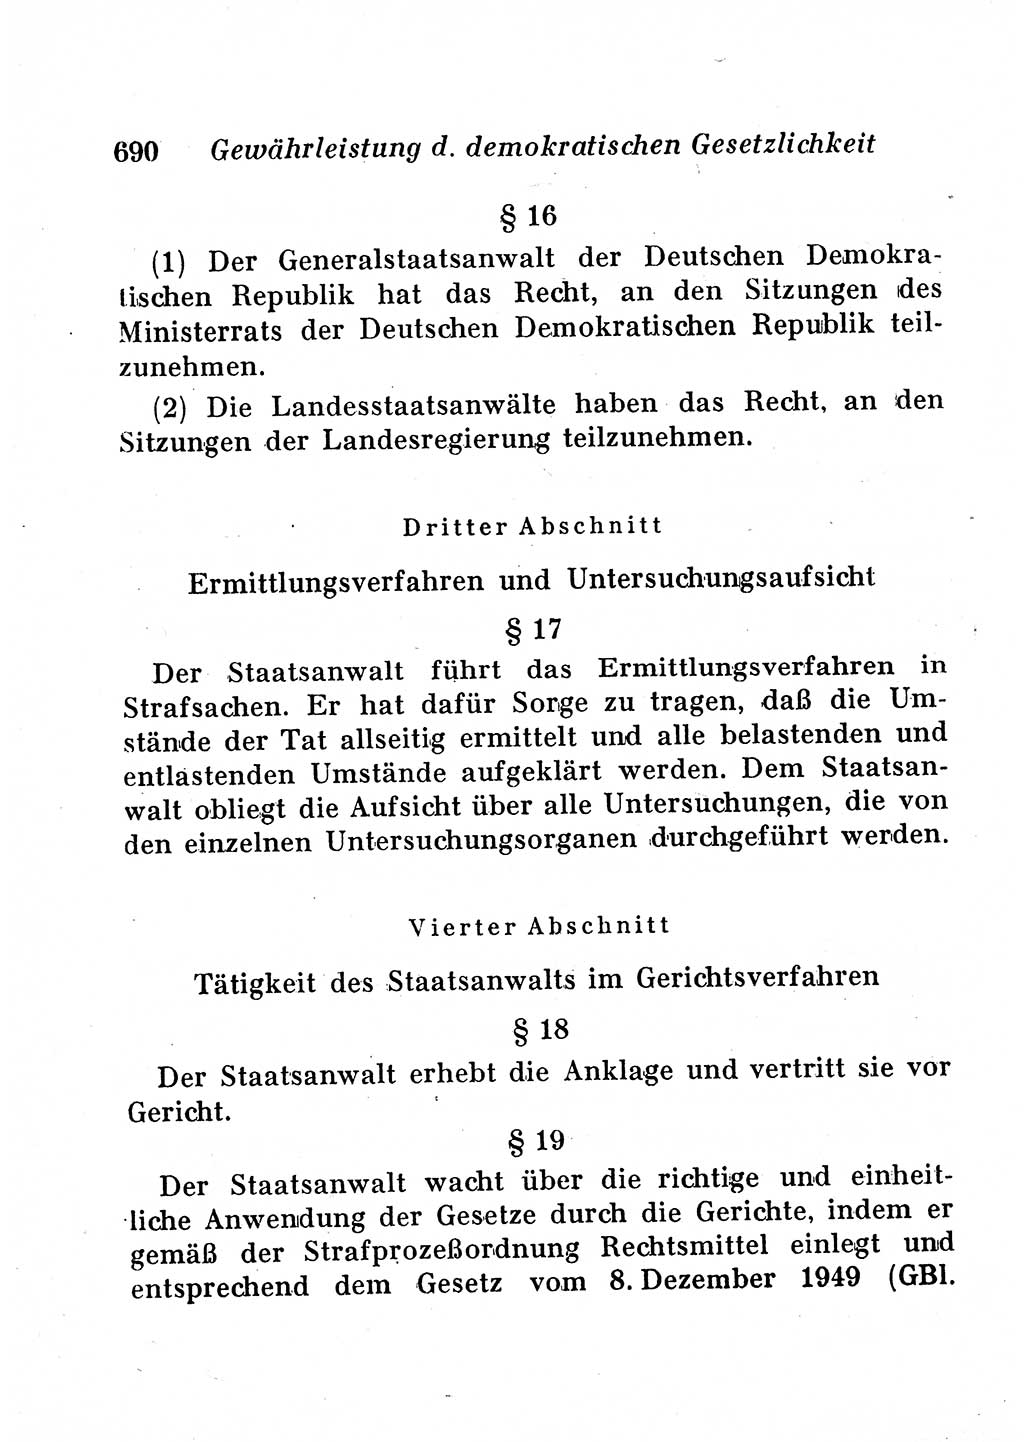 Staats- und verwaltungsrechtliche Gesetze der Deutschen Demokratischen Republik (DDR) 1958, Seite 690 (StVerwR Ges. DDR 1958, S. 690)